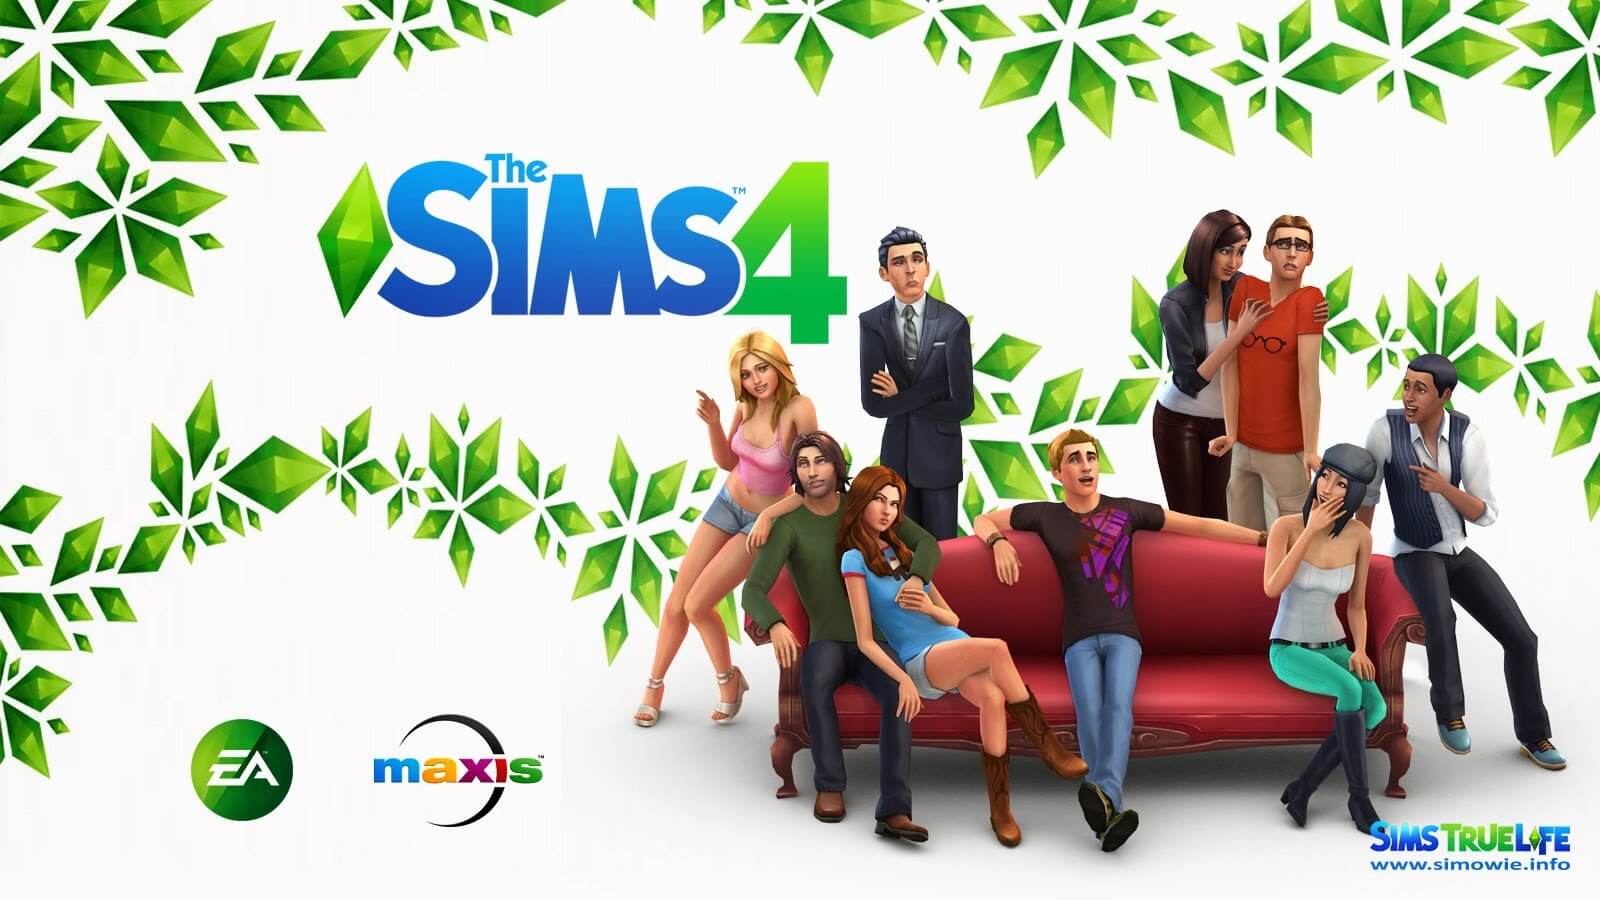 sims 4 free full game